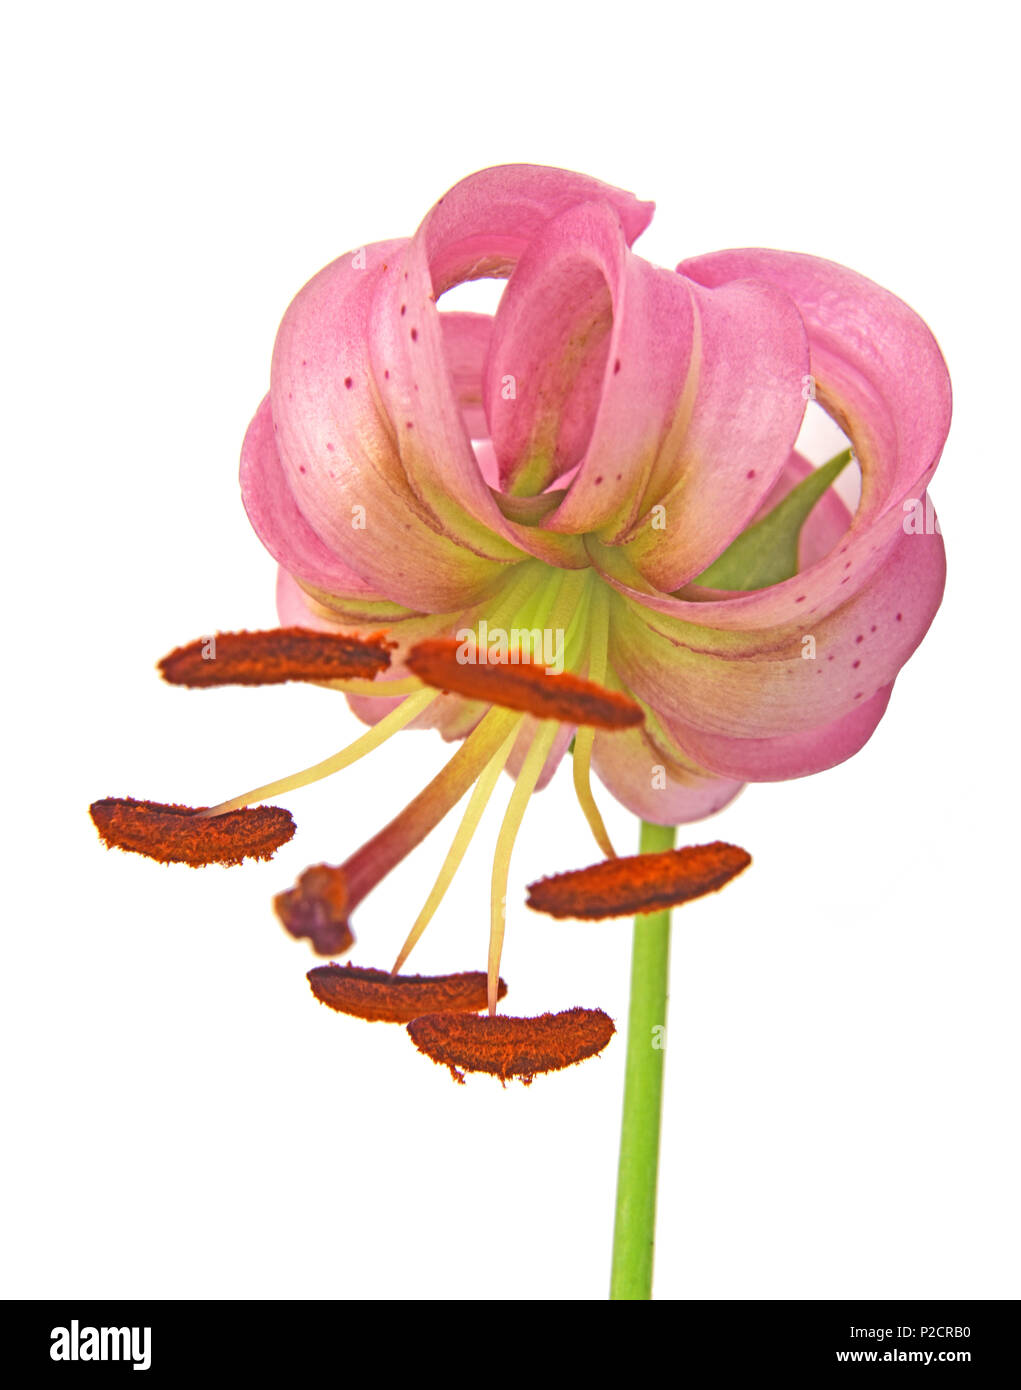 Gros plan d'une floraison (Lilium martagon Martagon Lily) isolé sur fond blanc Banque D'Images